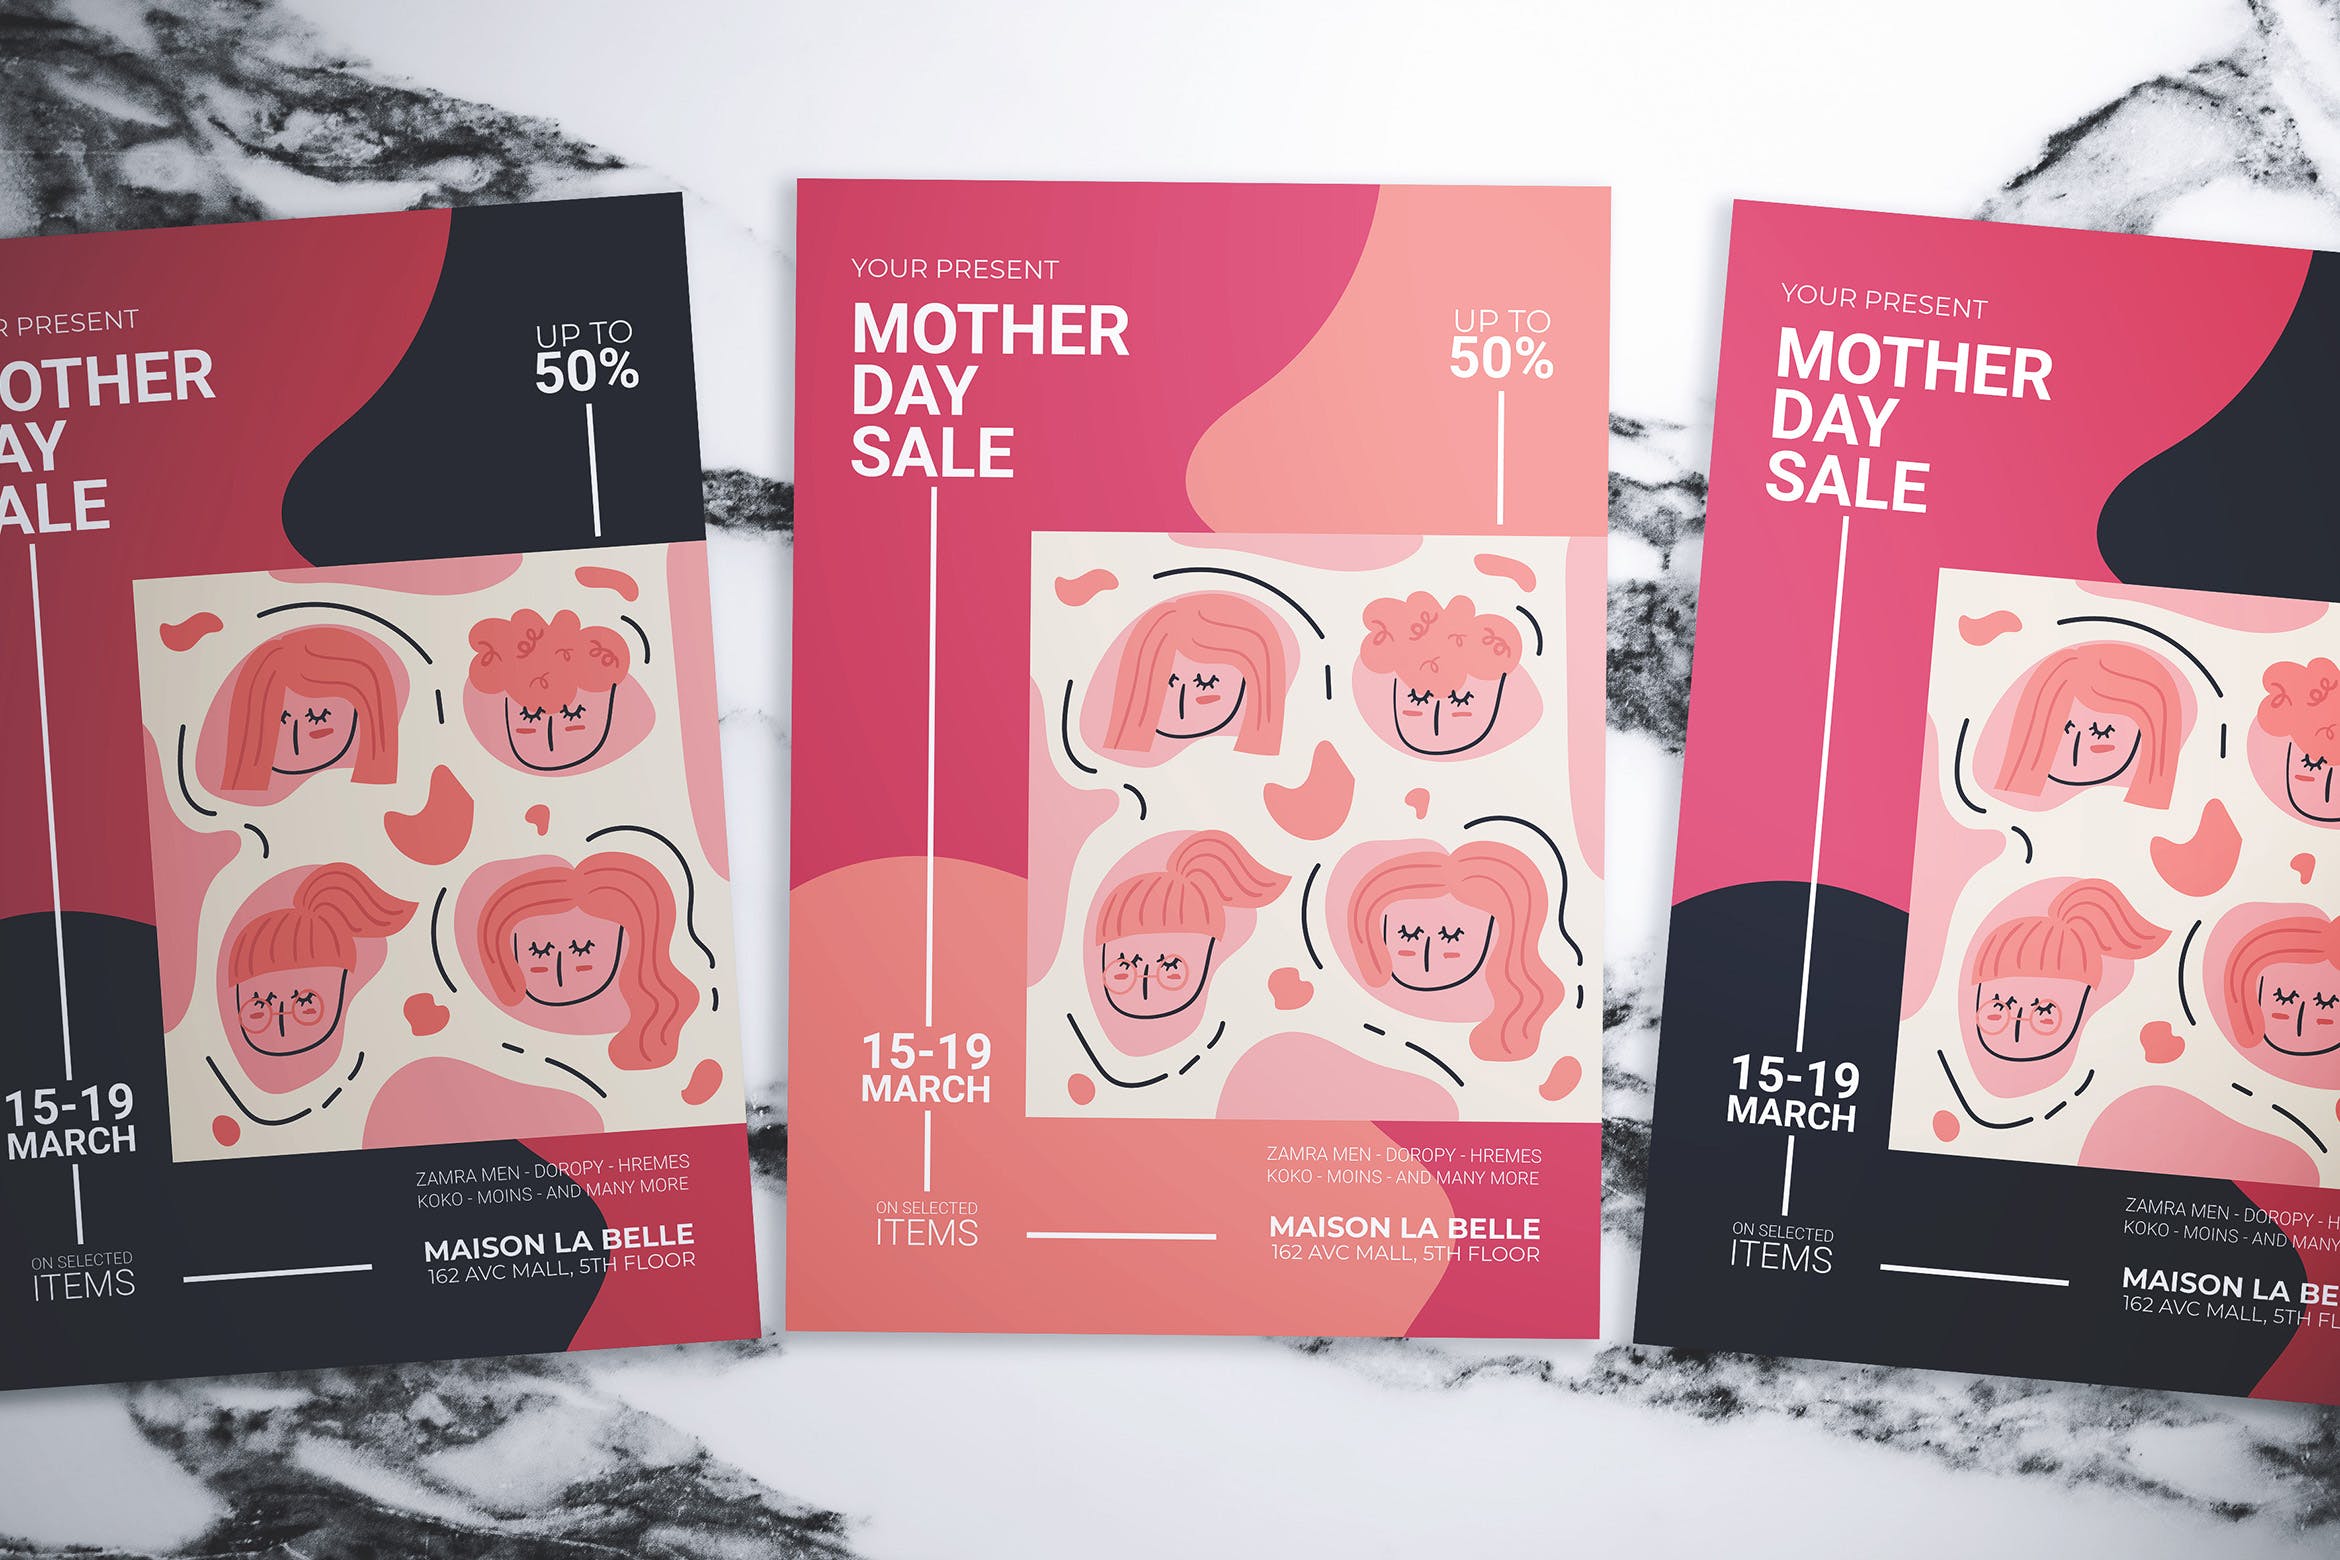 抽象孟菲斯风格母亲节促销活动海报设计模板 Mother Day Sale Flyer插图